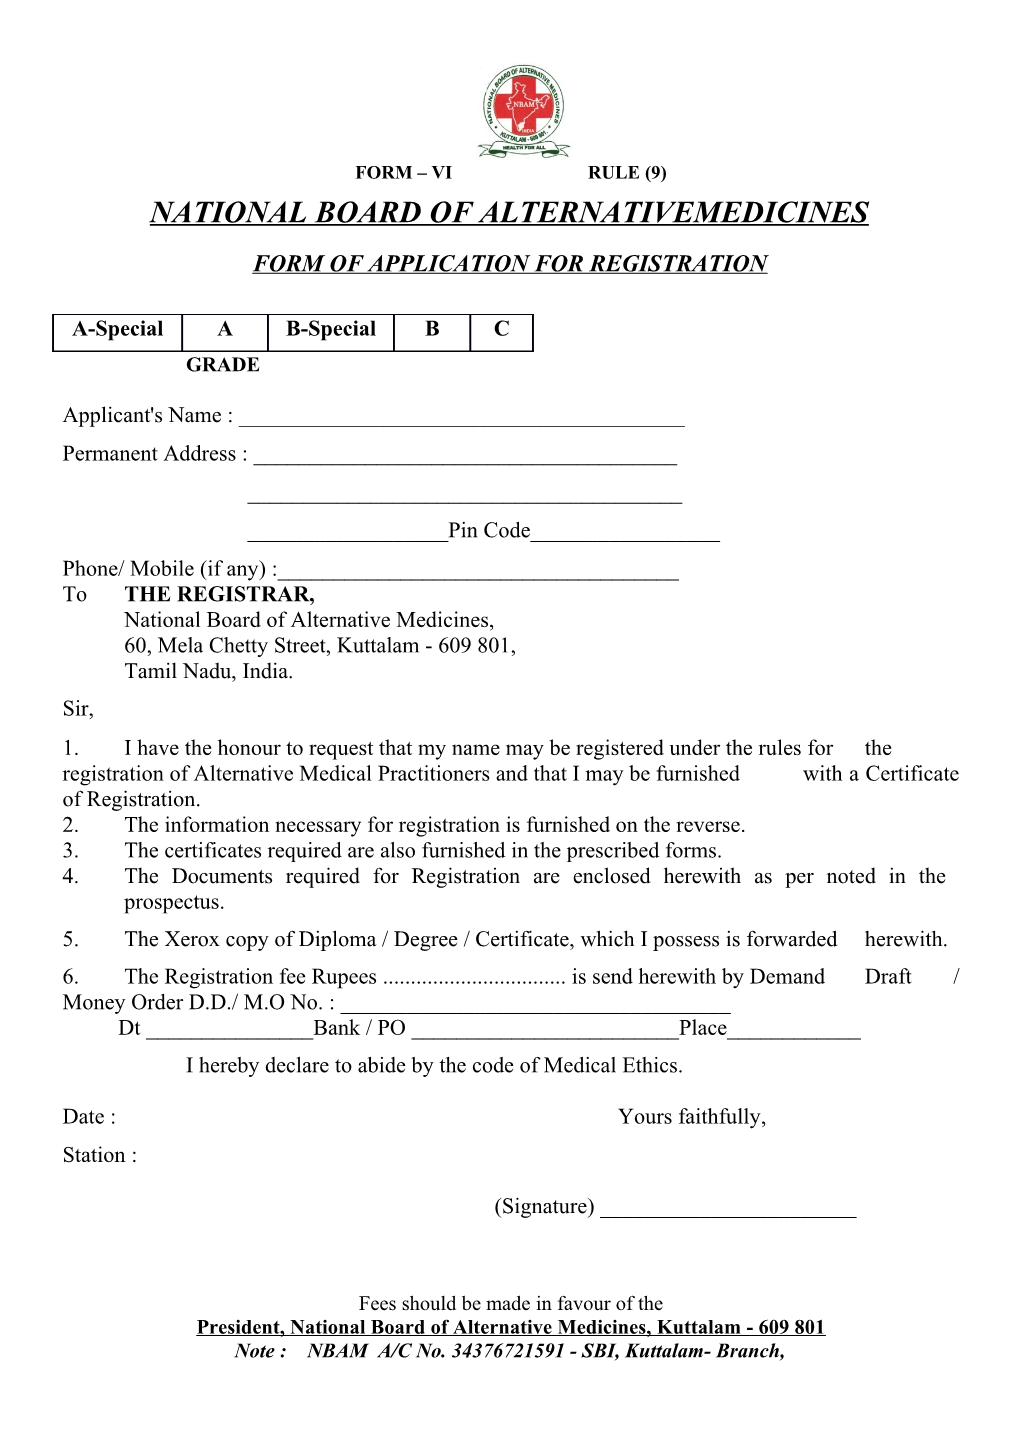 Form of Application for Registration